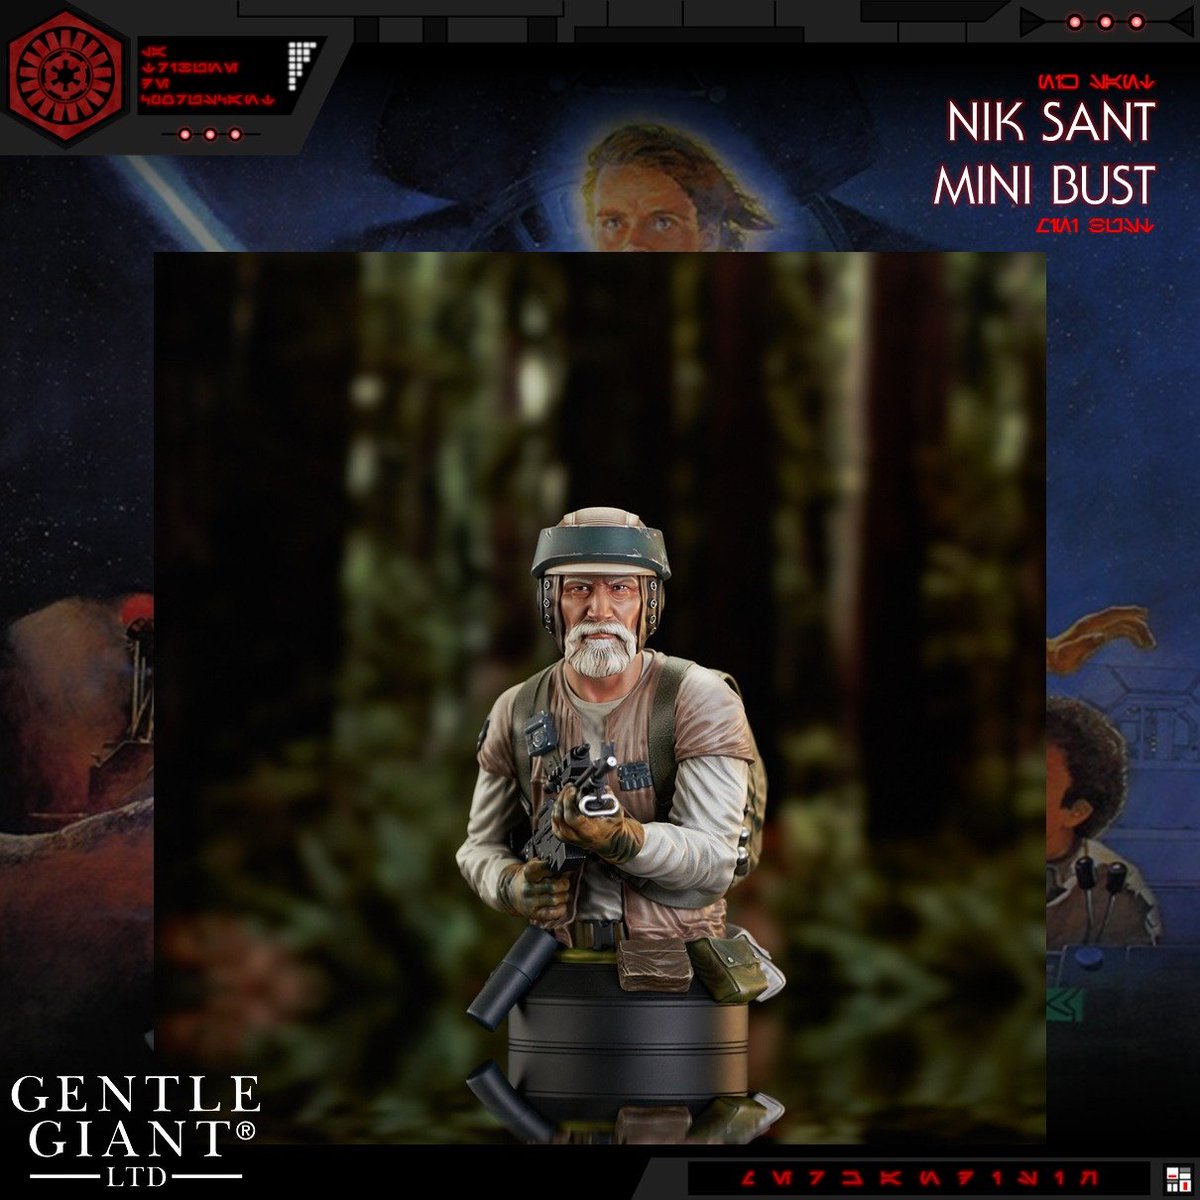 𝐆𝐄𝐍𝐓𝐋𝐄 𝐆𝐈𝐀𝐍𝐓

Gentle Giant présente son nouveau mini buste de Nik Sant du Retour du Jedi.

Ce buste est disponible en précommande à 130$.

#LaTribunedeCoruscant #GentleGiant #NikSant #LeRetourduJedi